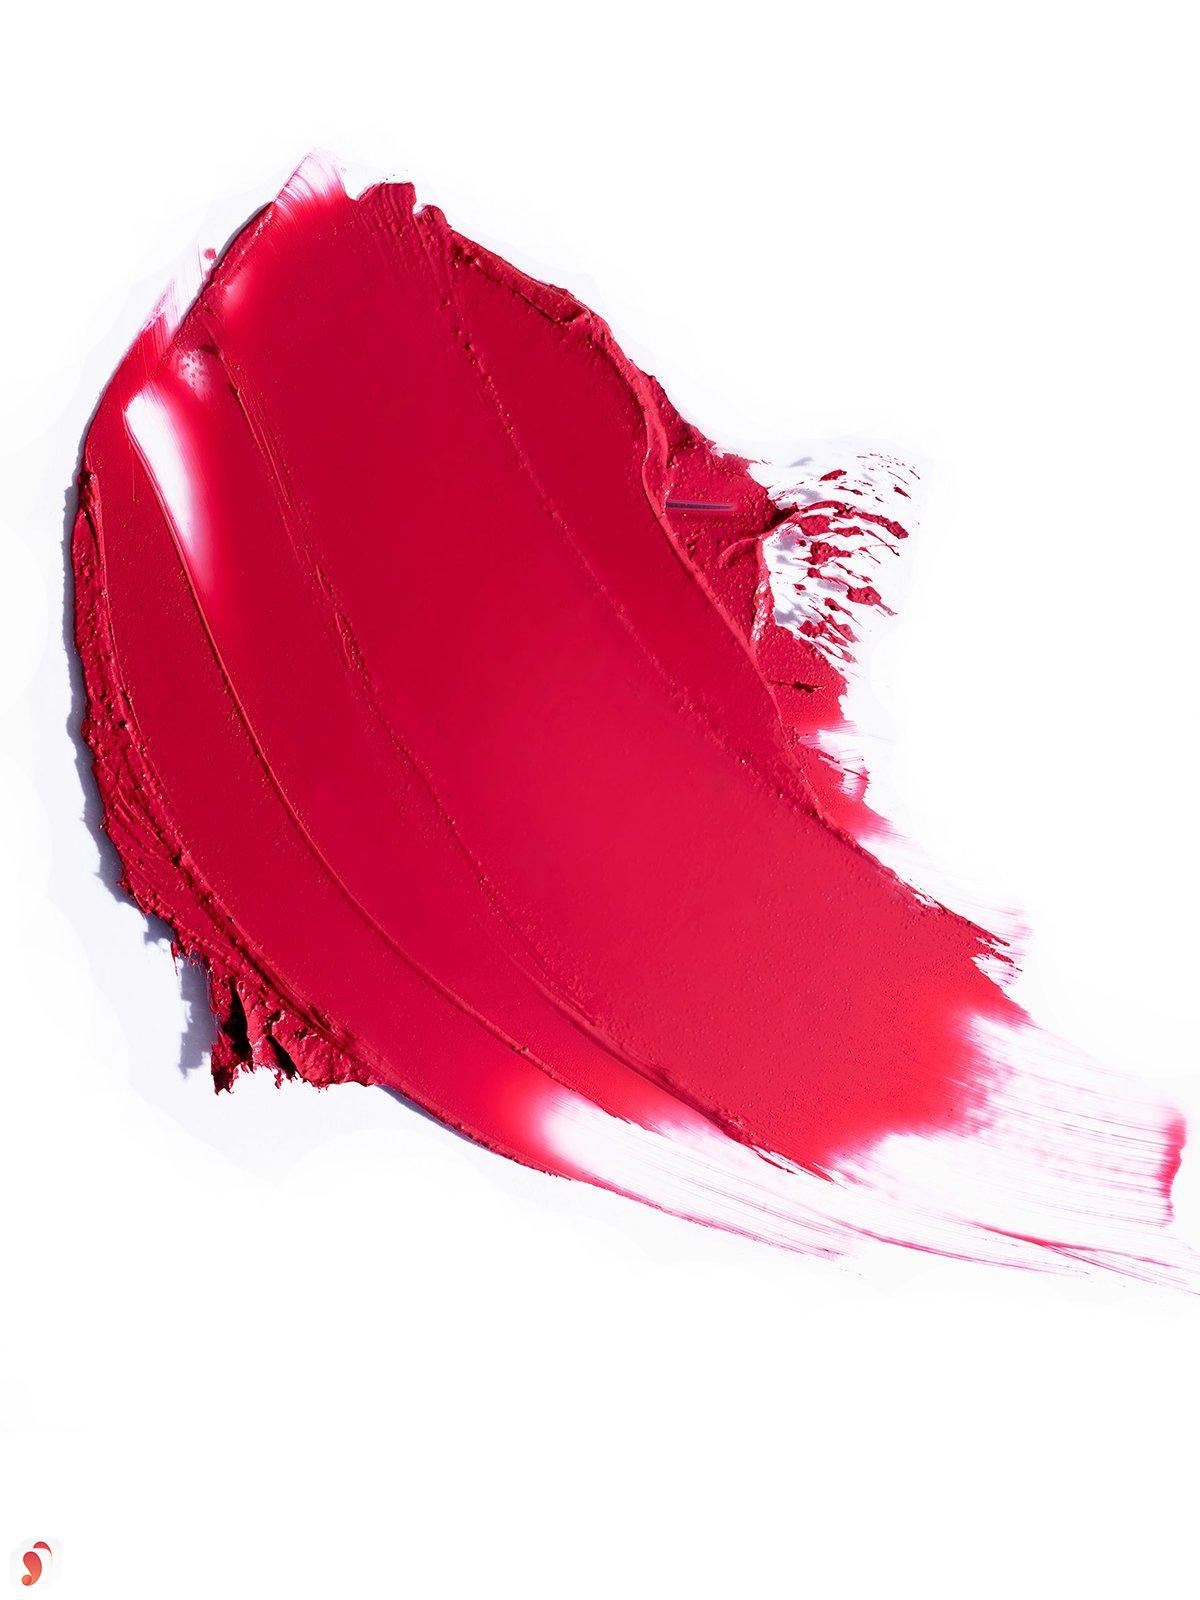 Review son Ilia Color Block High Impact Lipstick 15